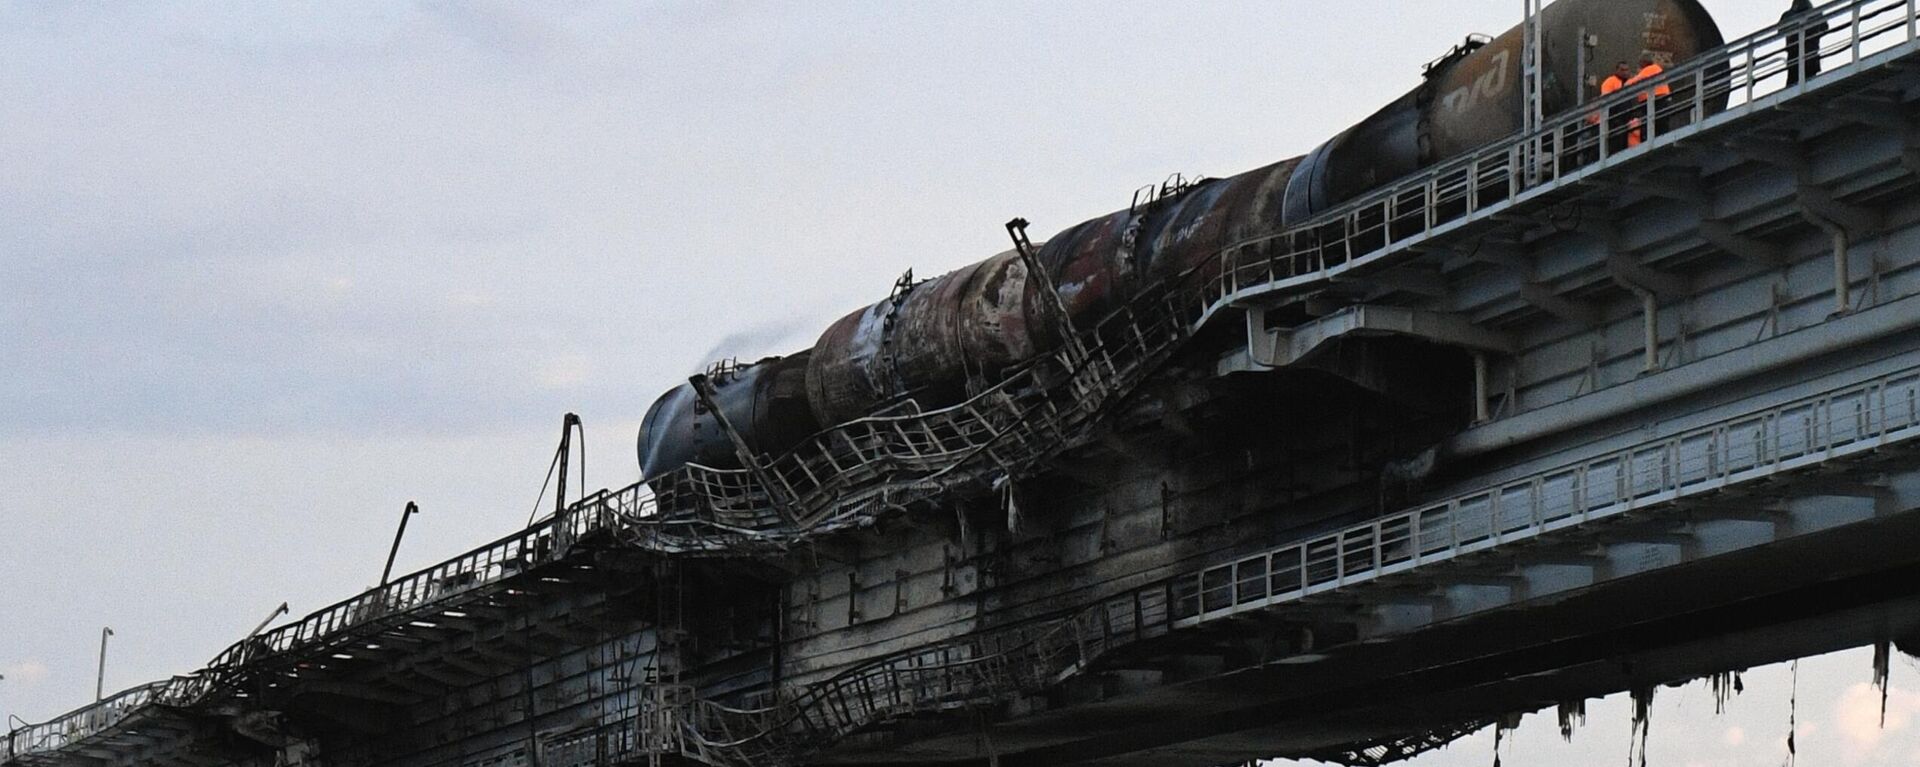 Железнодорожные составы с цистернами на Крымском мосту, на автомобильной части которого со стороны Таманского полуострова произошел подрыв грузового автомобиля, 8 октября 2022 года - Sputnik Латвия, 1920, 12.10.2022